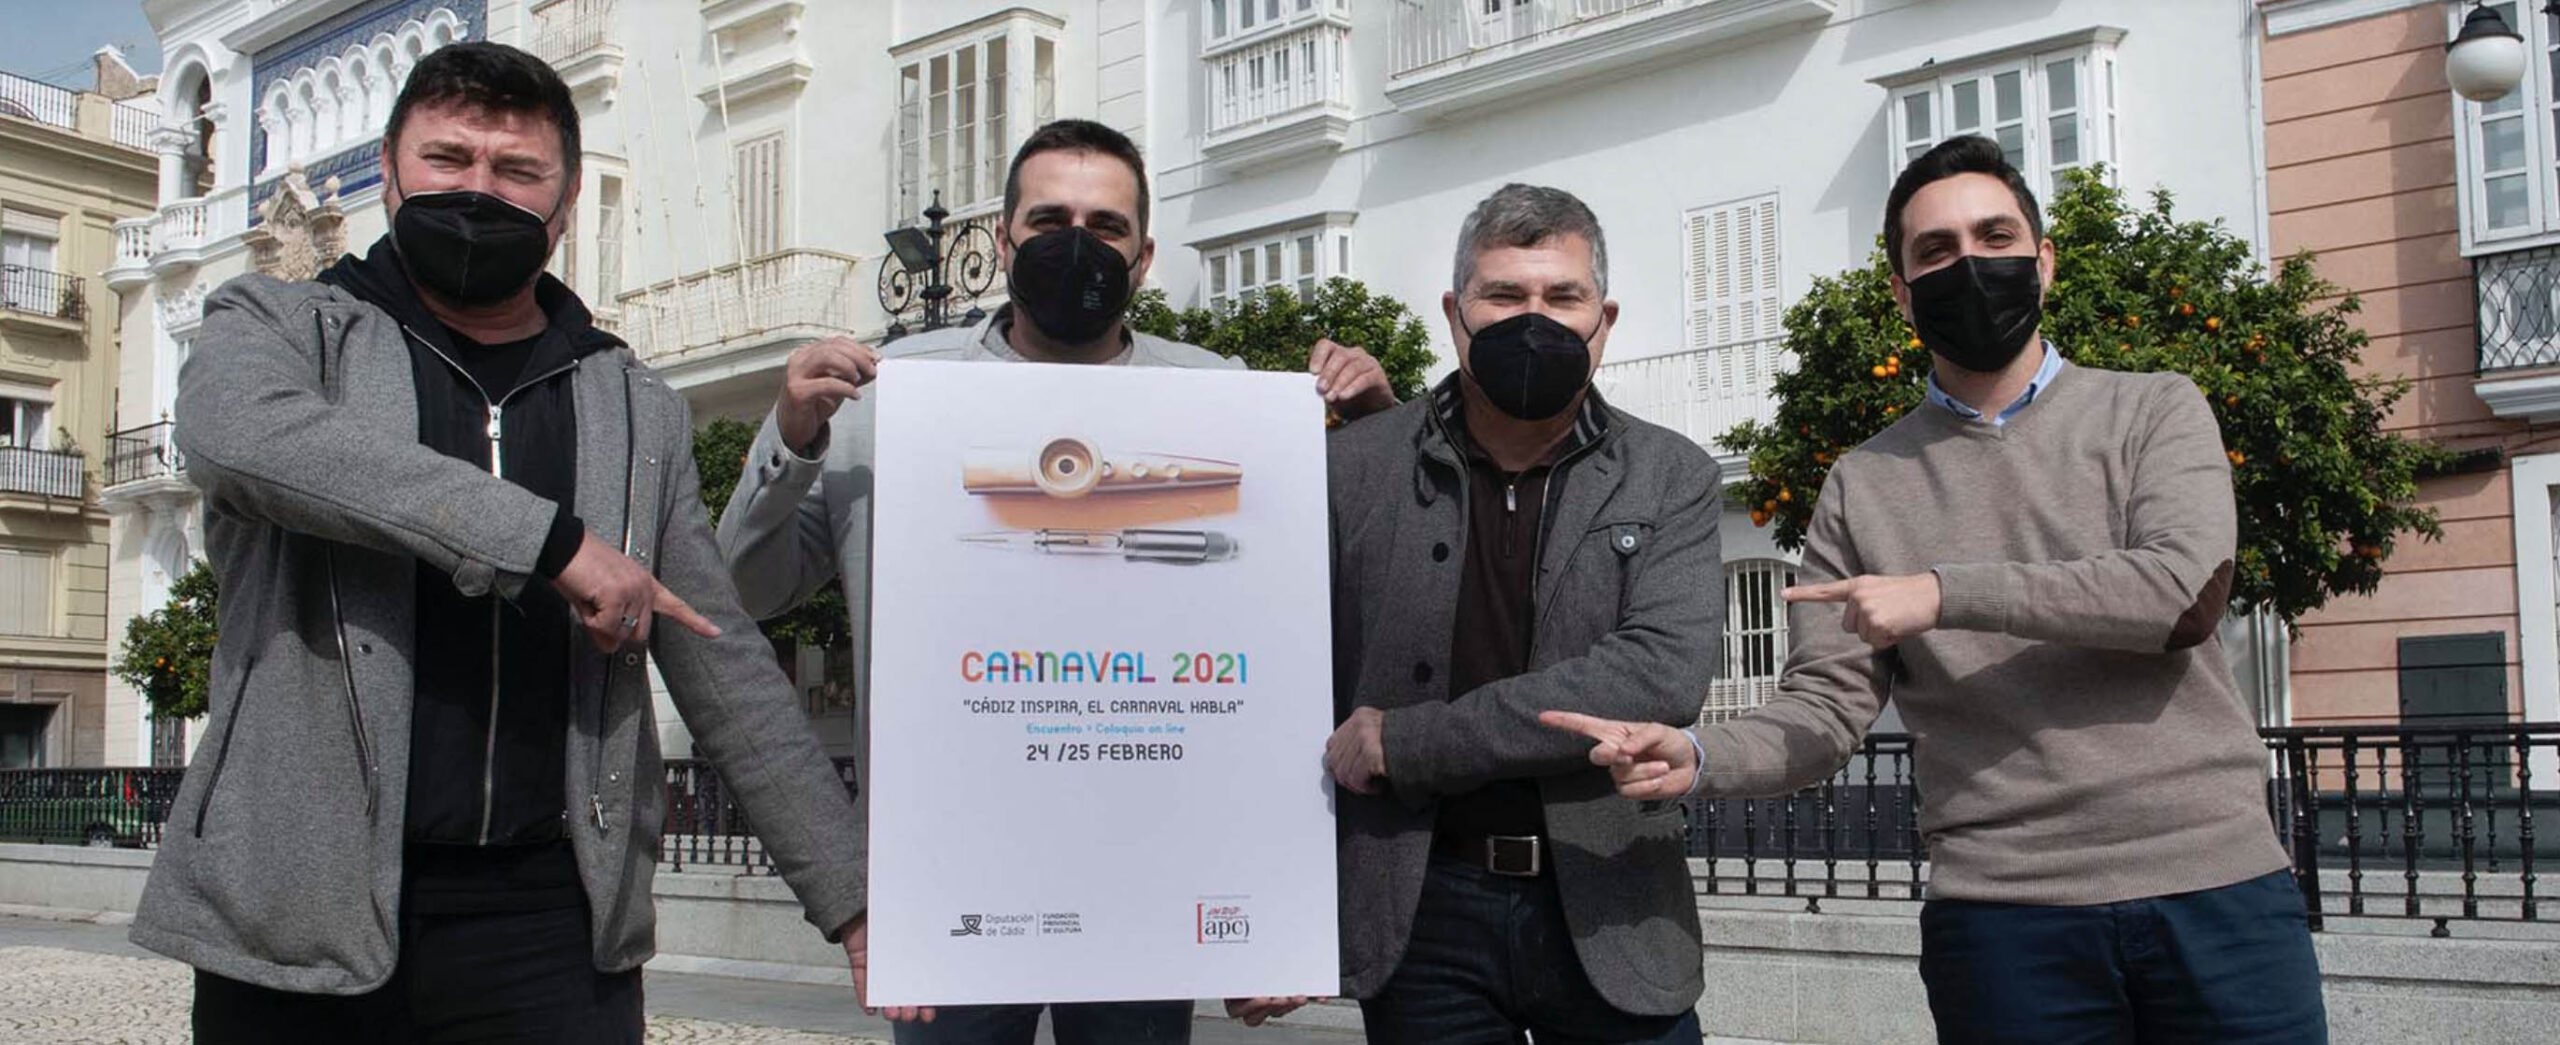 La APC colabora con la Diputación para llevar a cabo coloquios virtuales en torno a la creación carnavalesca